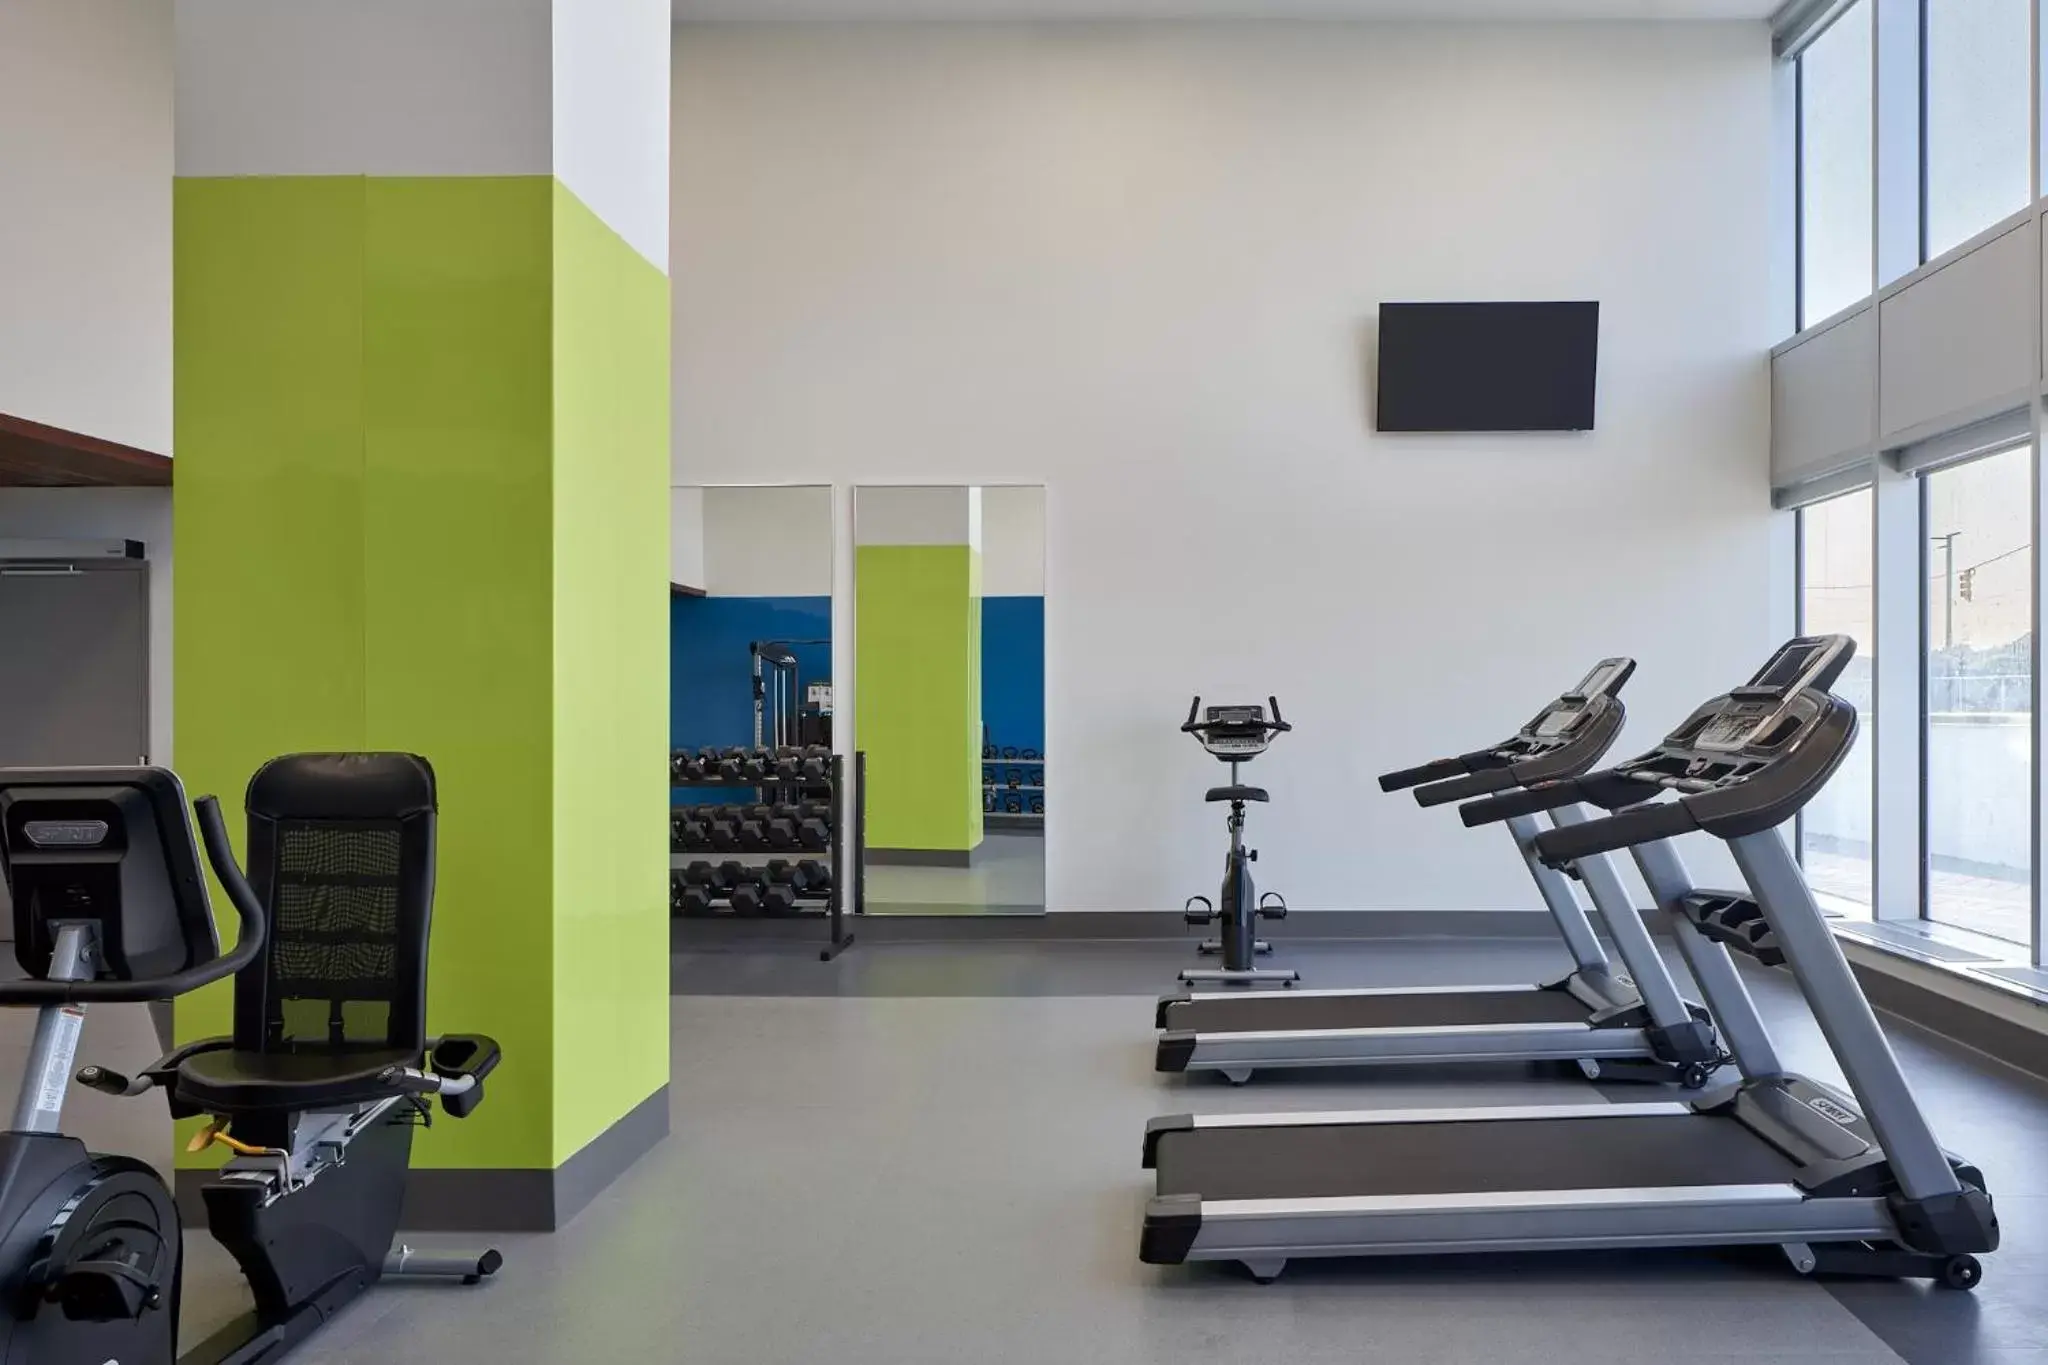 Fitness centre/facilities, Fitness Center/Facilities in Pickering Casino Resort